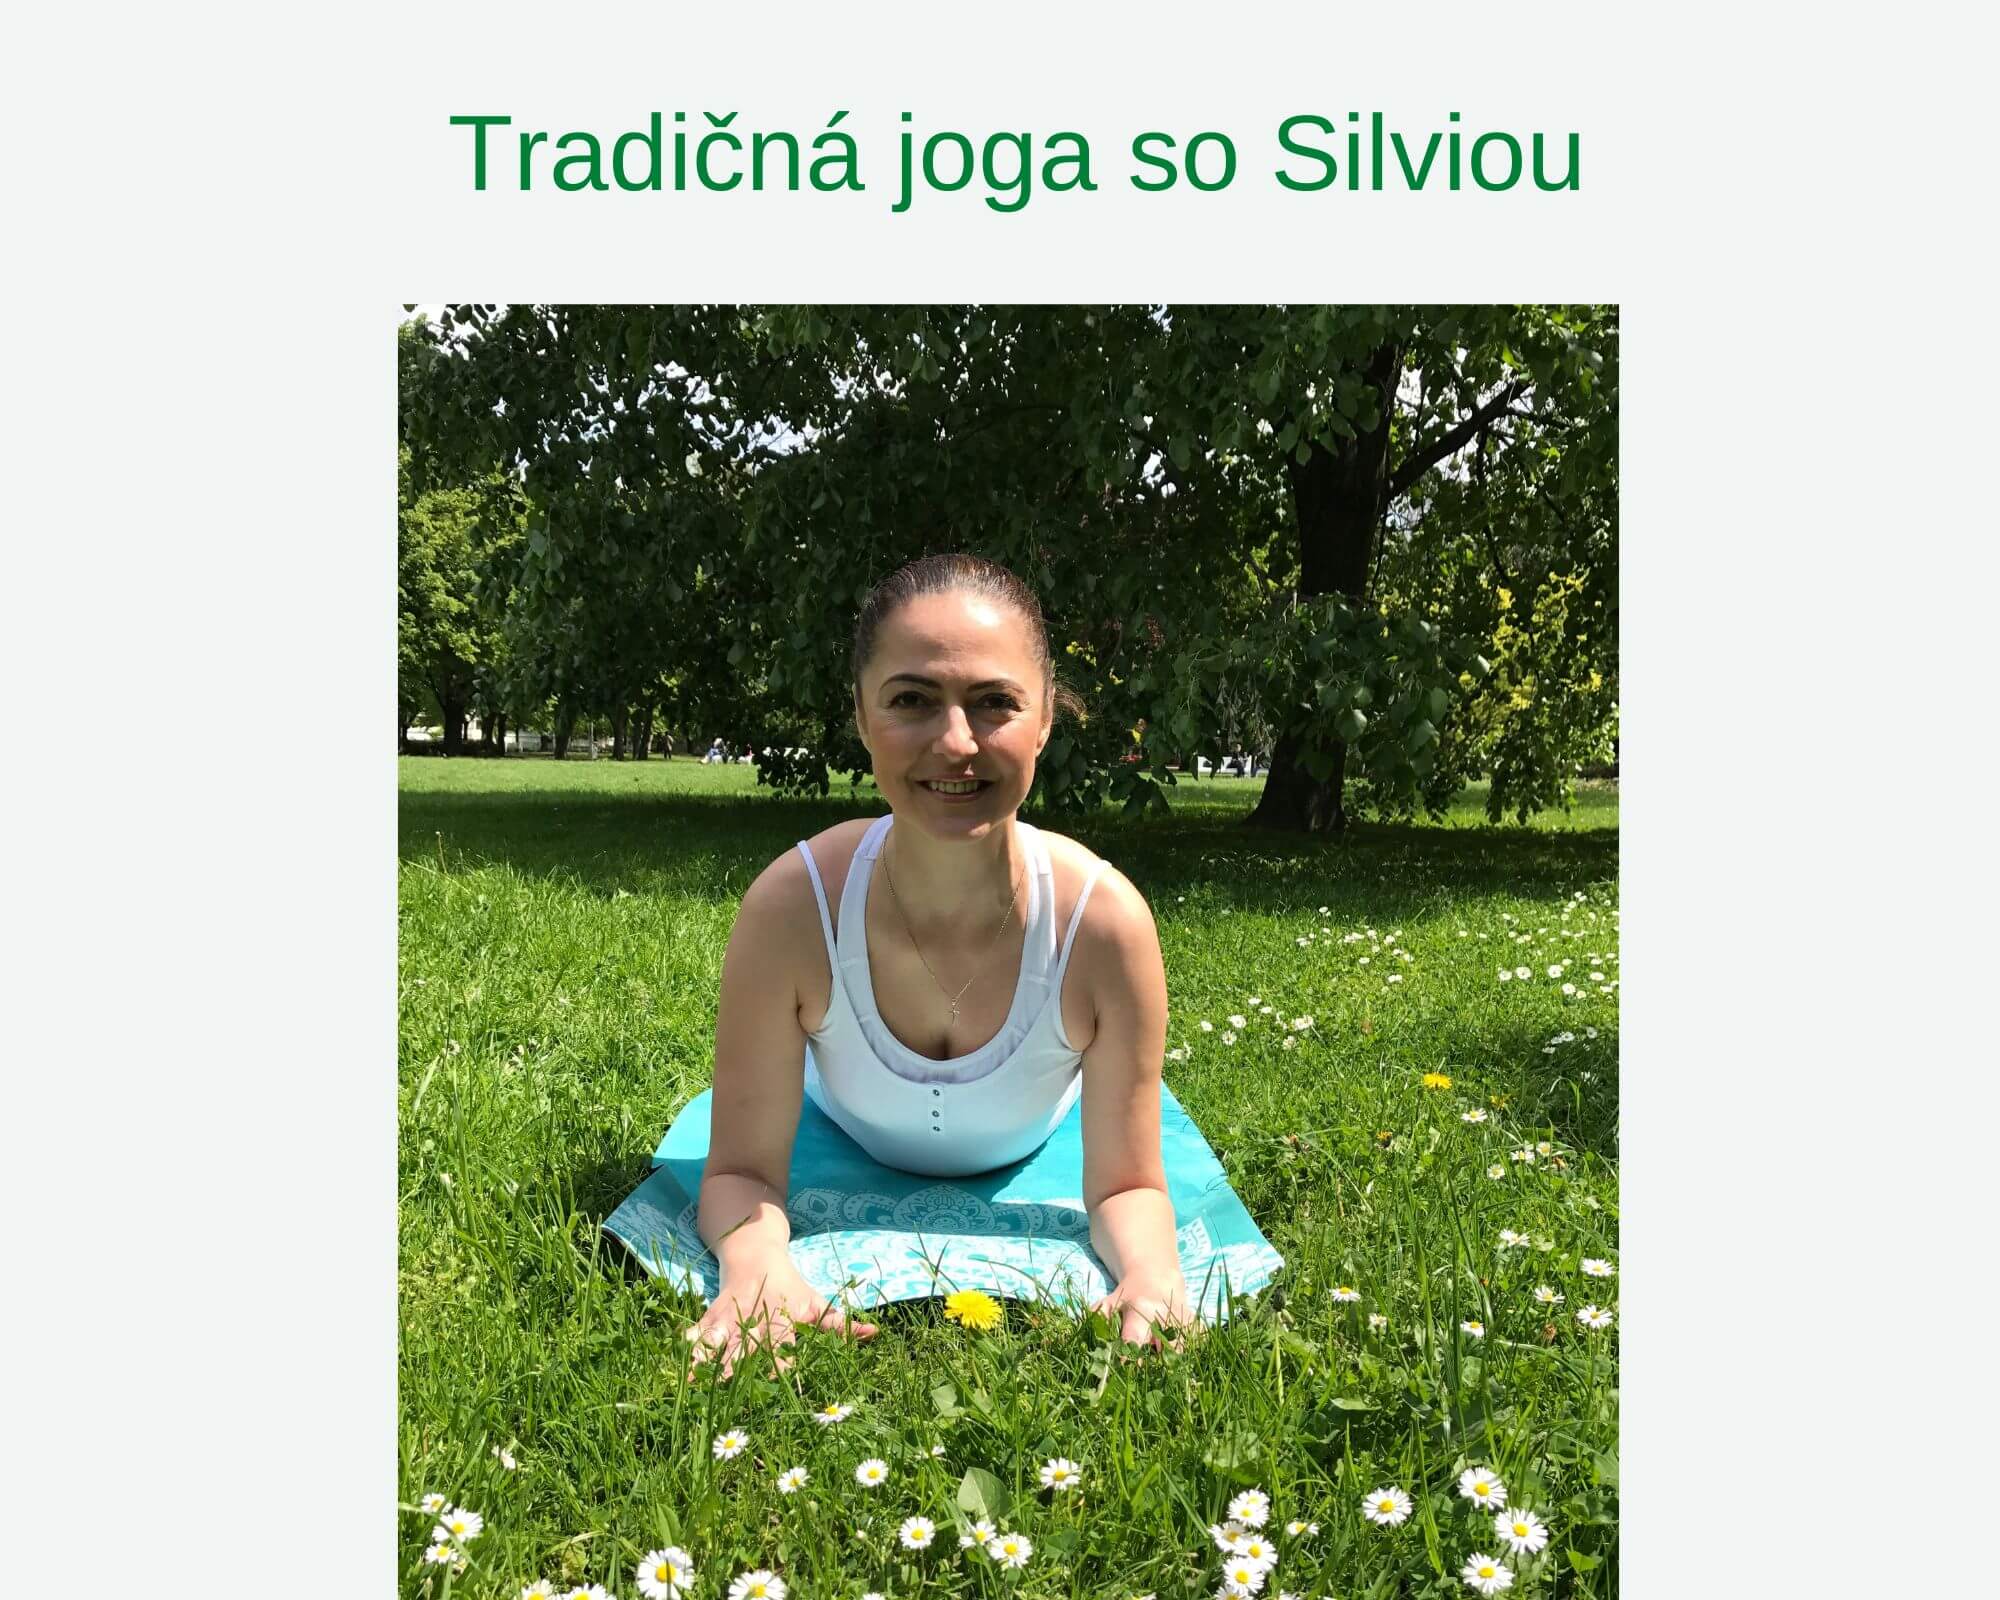 Tradičná joga so Silviou